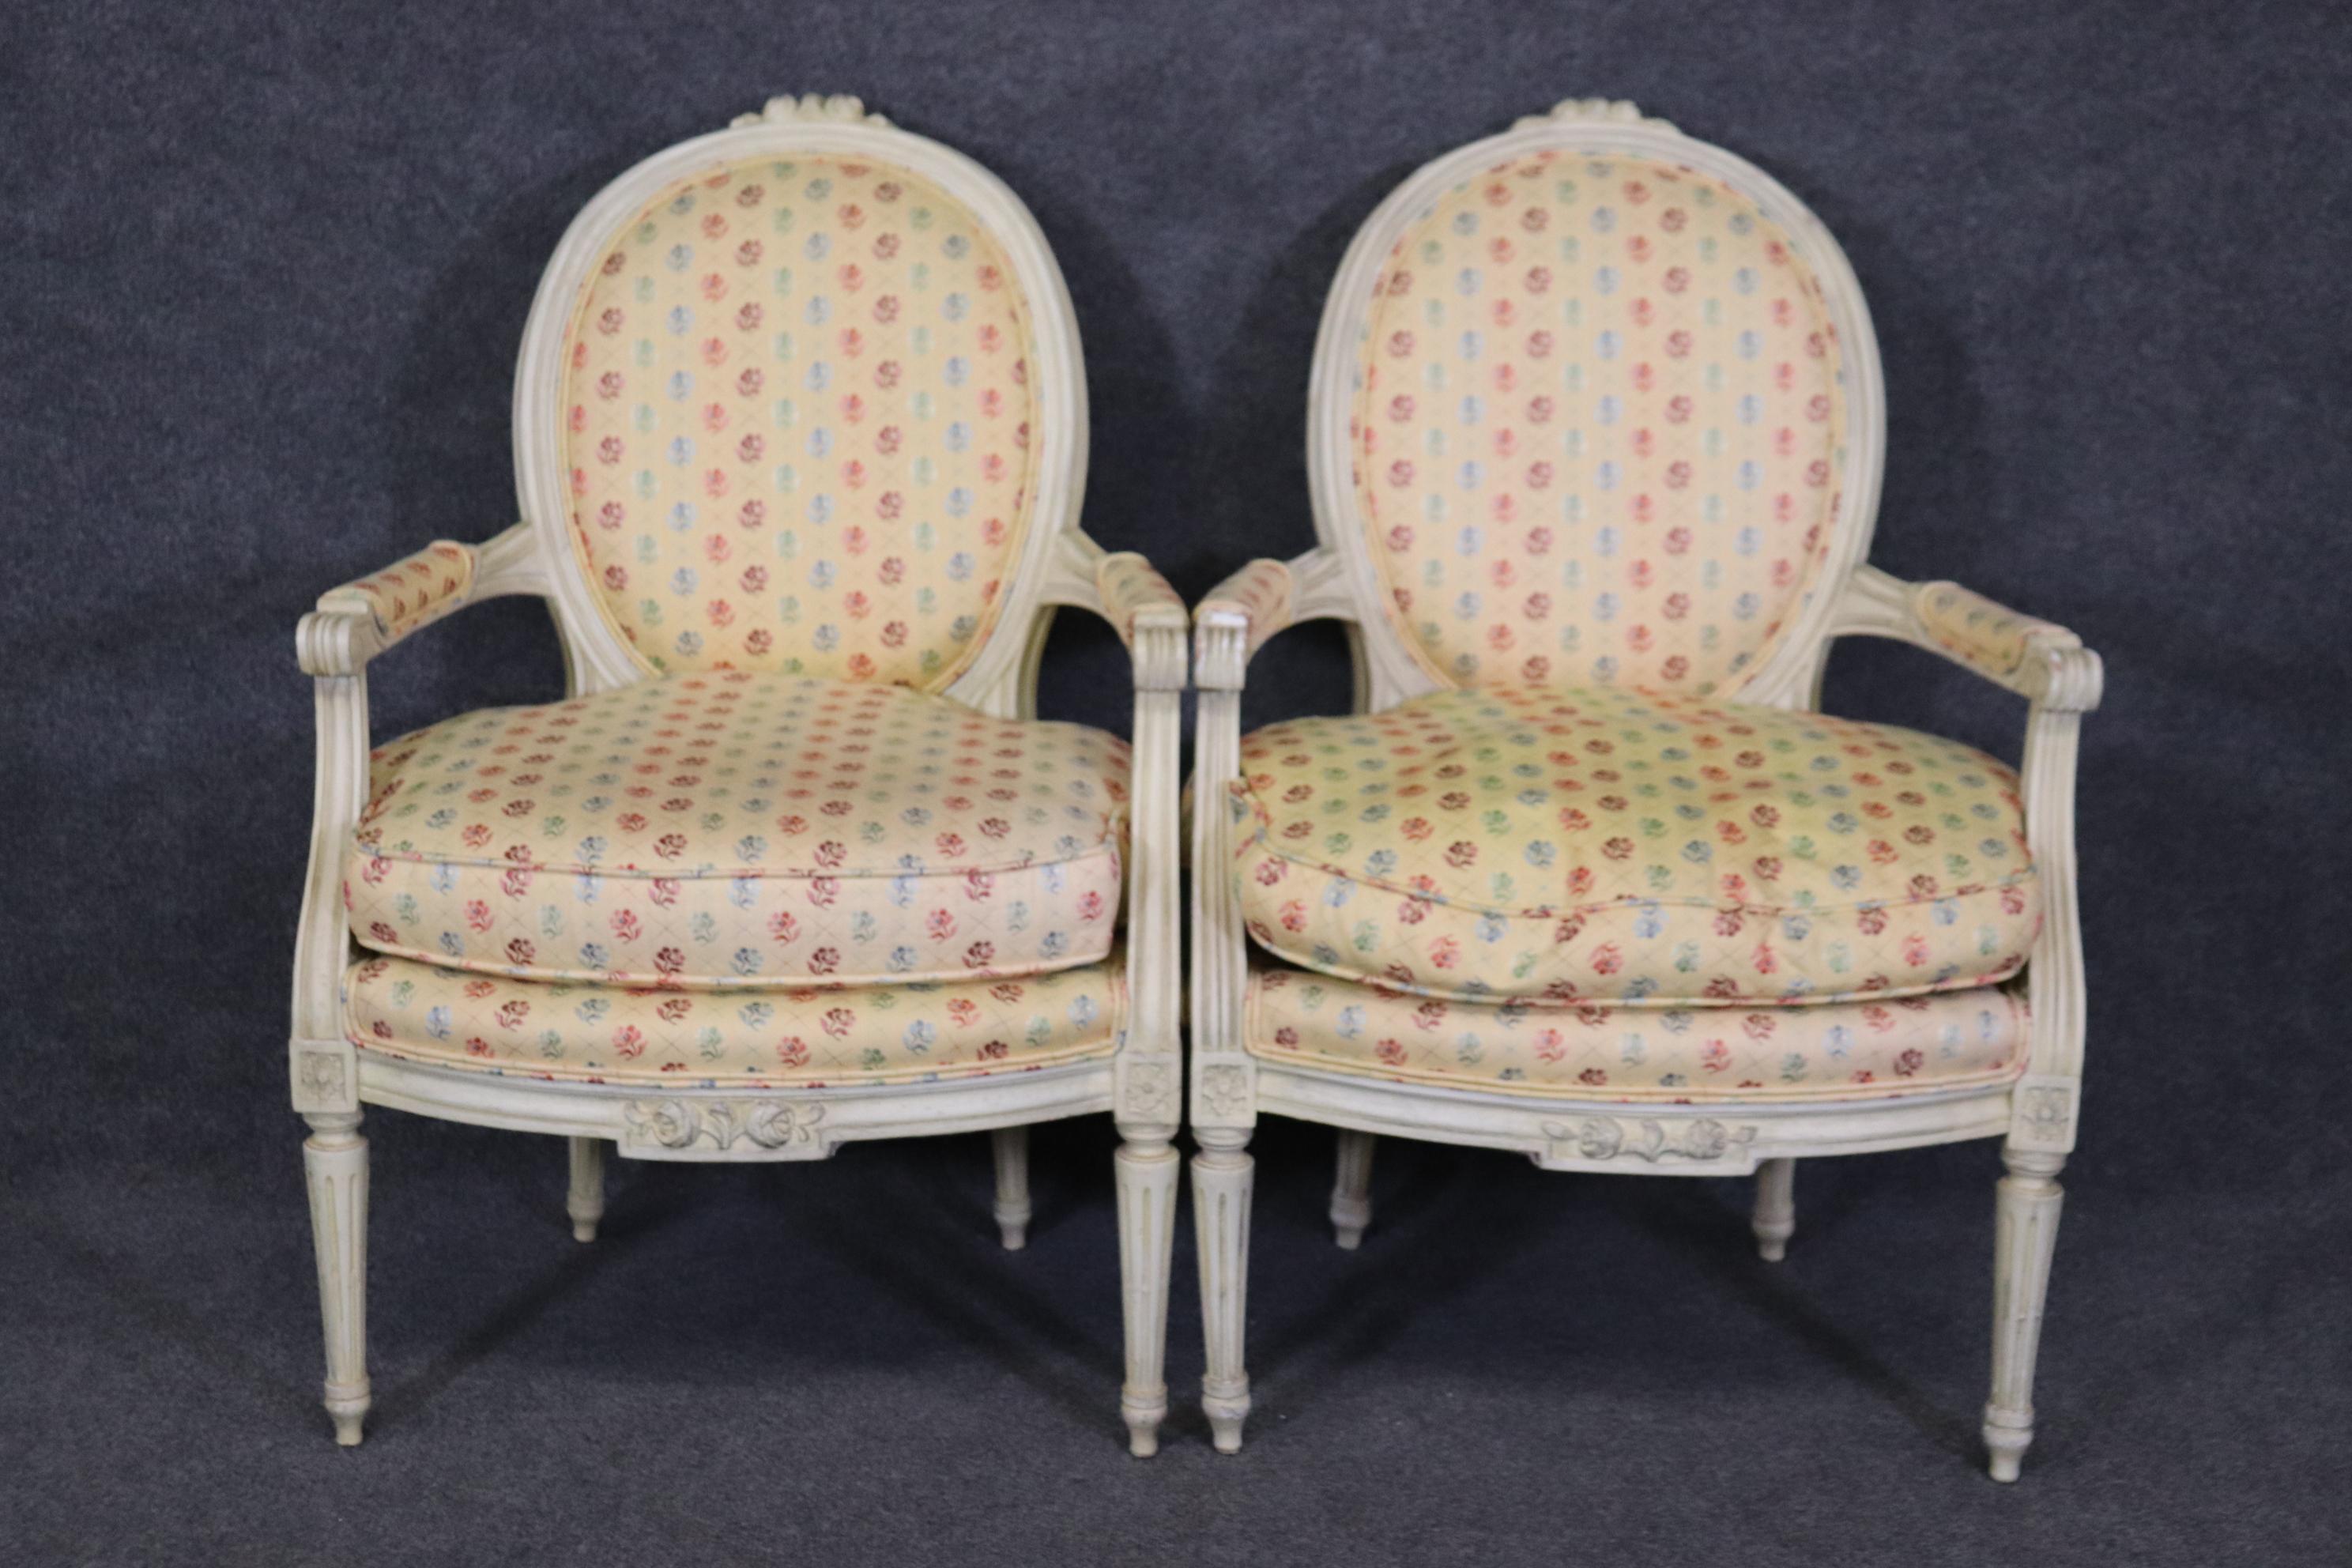 Abmessungen- H: 35 1/2in B: 24in T: 25 3/4in SH: 18 1/2in 

Dieses antike Paar von Louis XVI-Stil Creme Farbe dekoriert Sessel Akzent Stühle ist perfekt für Sie und Ihr Zuhause und ist ein schönes Beispiel für hochwertige Möbel aus dem 20.